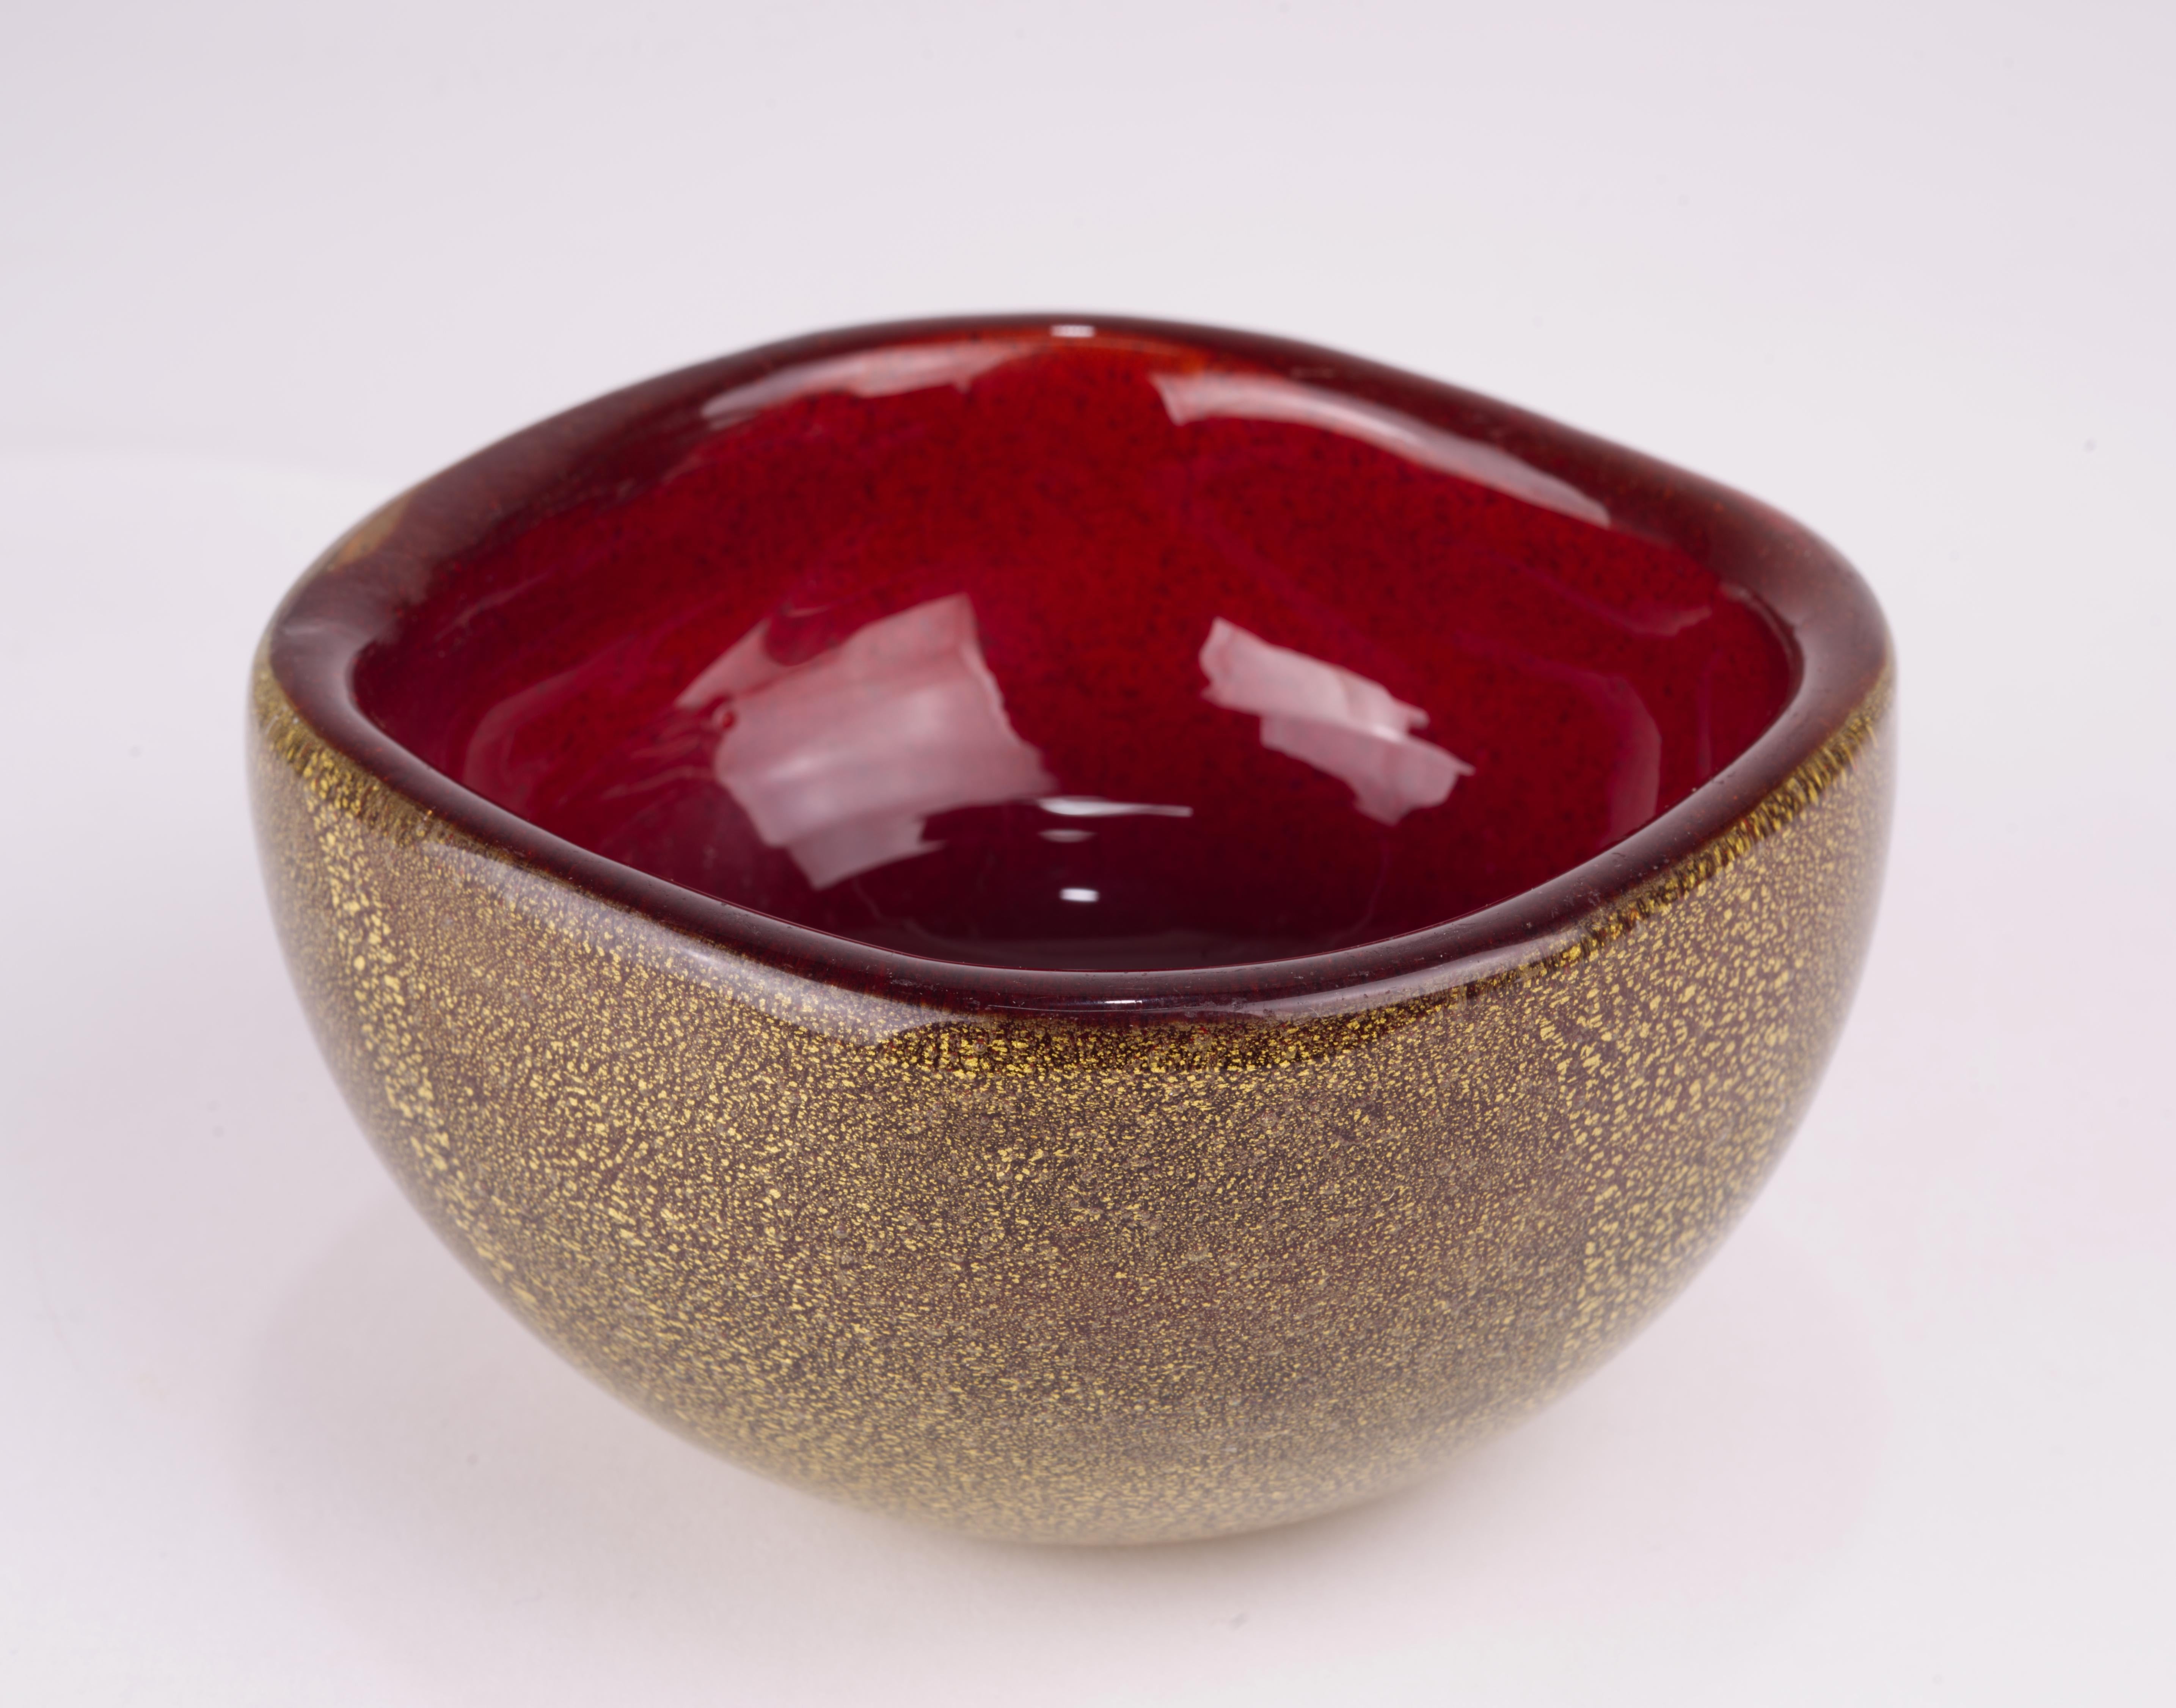  Magnifique bol en verre soufflé à la main par Archimede Seguso dans les années 1950. Il a été réalisé dans une combinaison étonnante de verre rouge profond avec des inclusions de feuilles d'or, entouré d'une couche de verre clair, en utilisant des